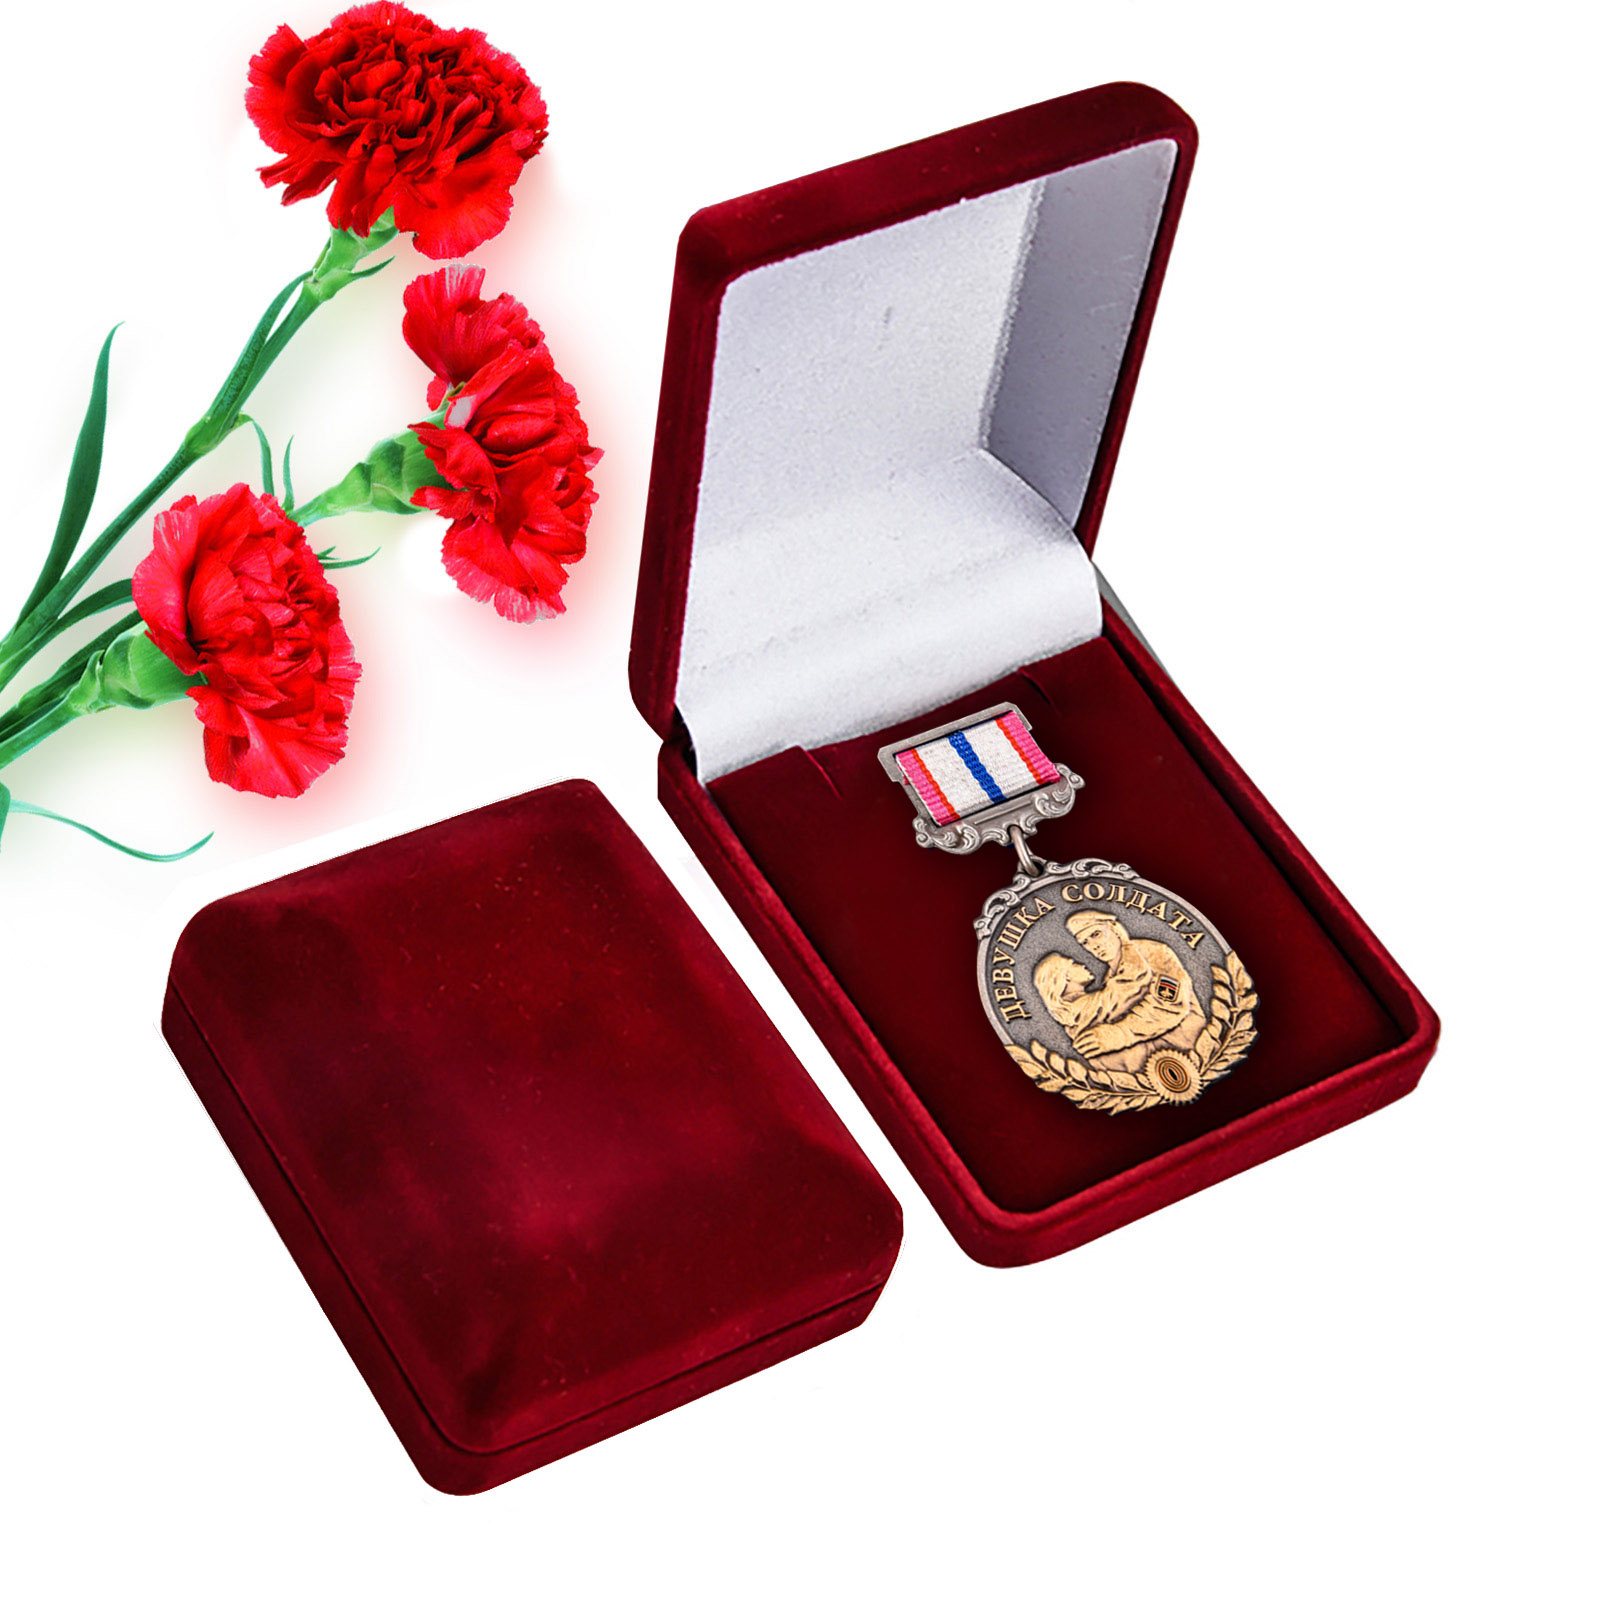 Купить памятную медаль Девушка солдата по экономичной цене